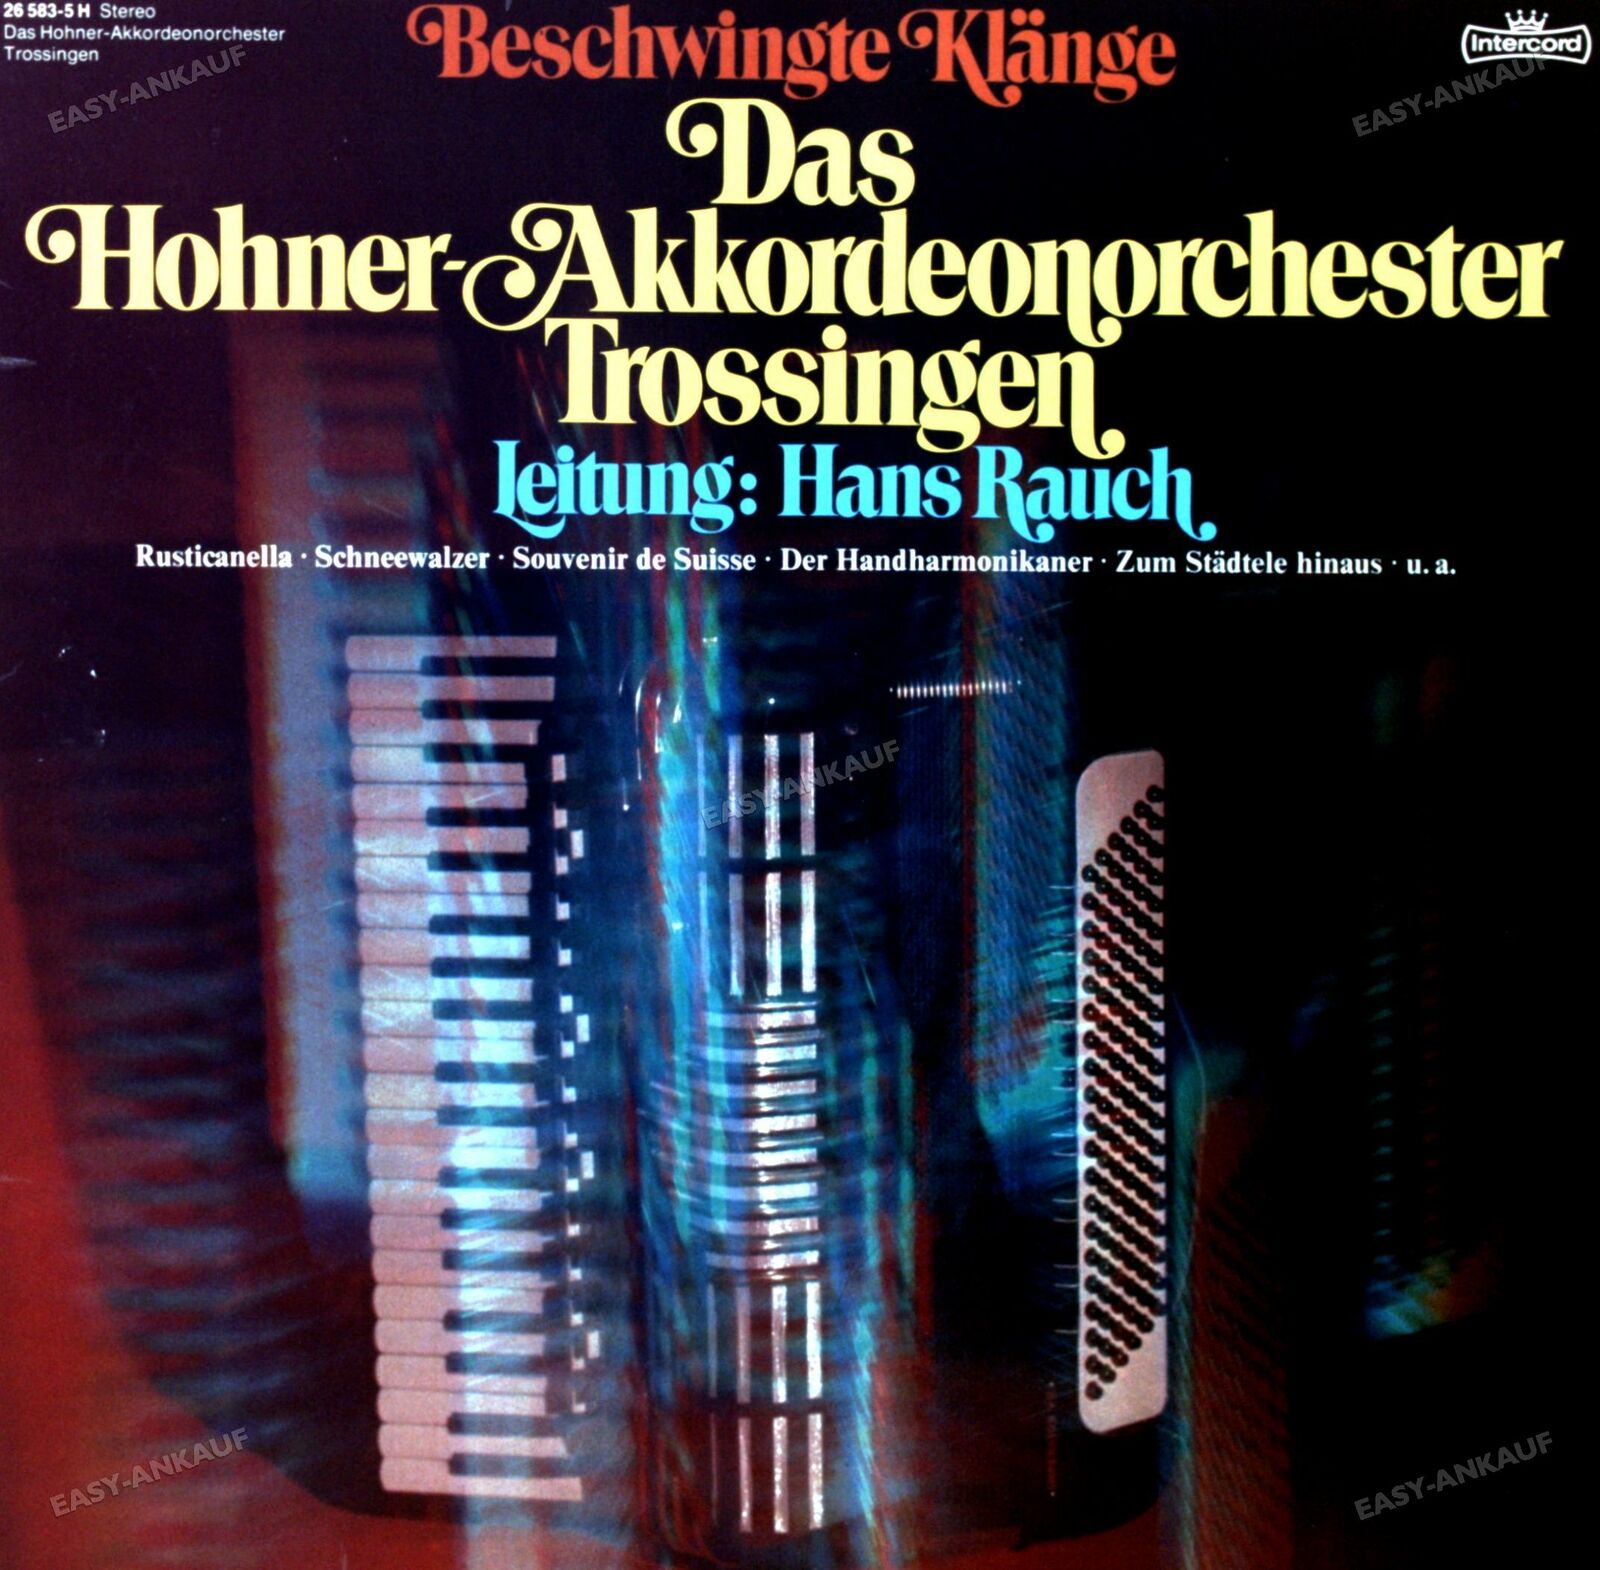 Das Hohner-Akkordeonorchester Trossingen - Beschwingte Klänge LP 1976 \'*